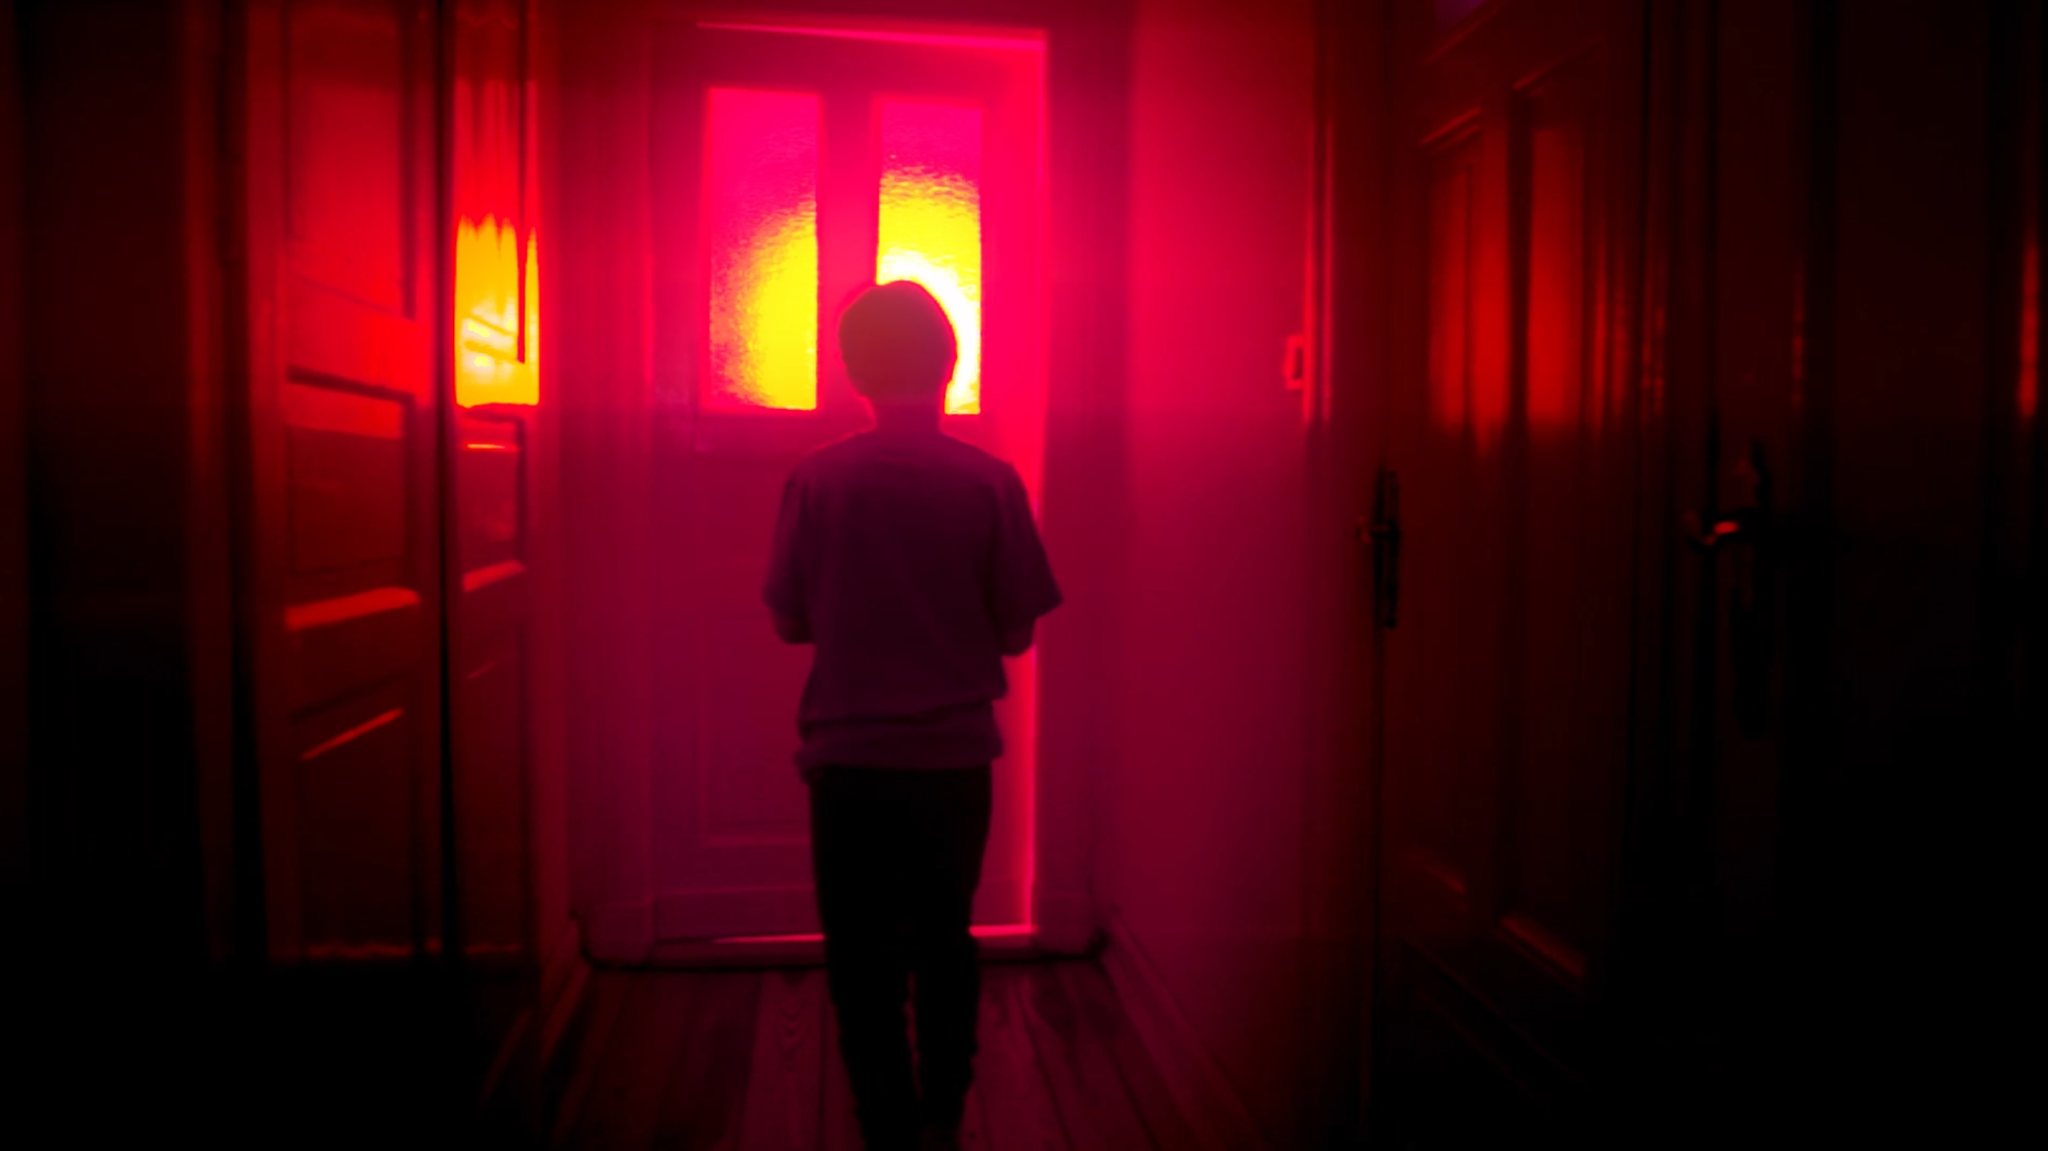 Ein kleiner Junge, der sich mit dem Rücken zur Kamera im Flur eines Hauses der Haustür nähert, durch die von außen rotes Licht hereindringt, ist in "Hager" zu sehen.